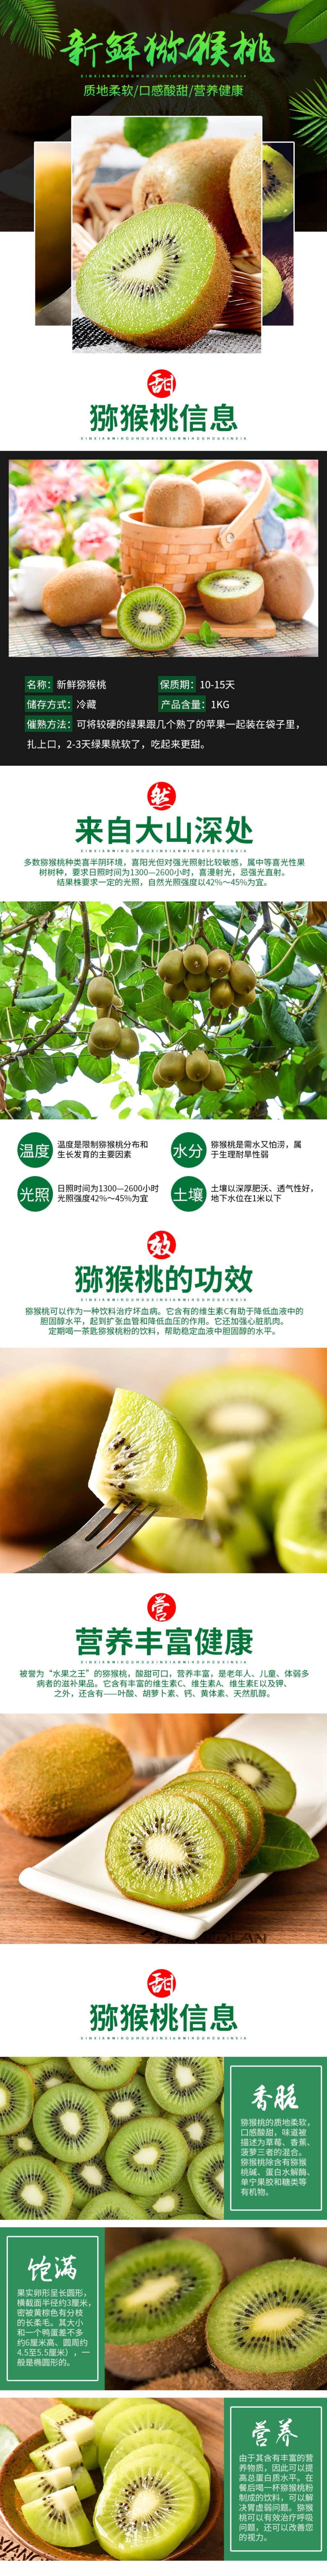 绿叶水果广告语图片